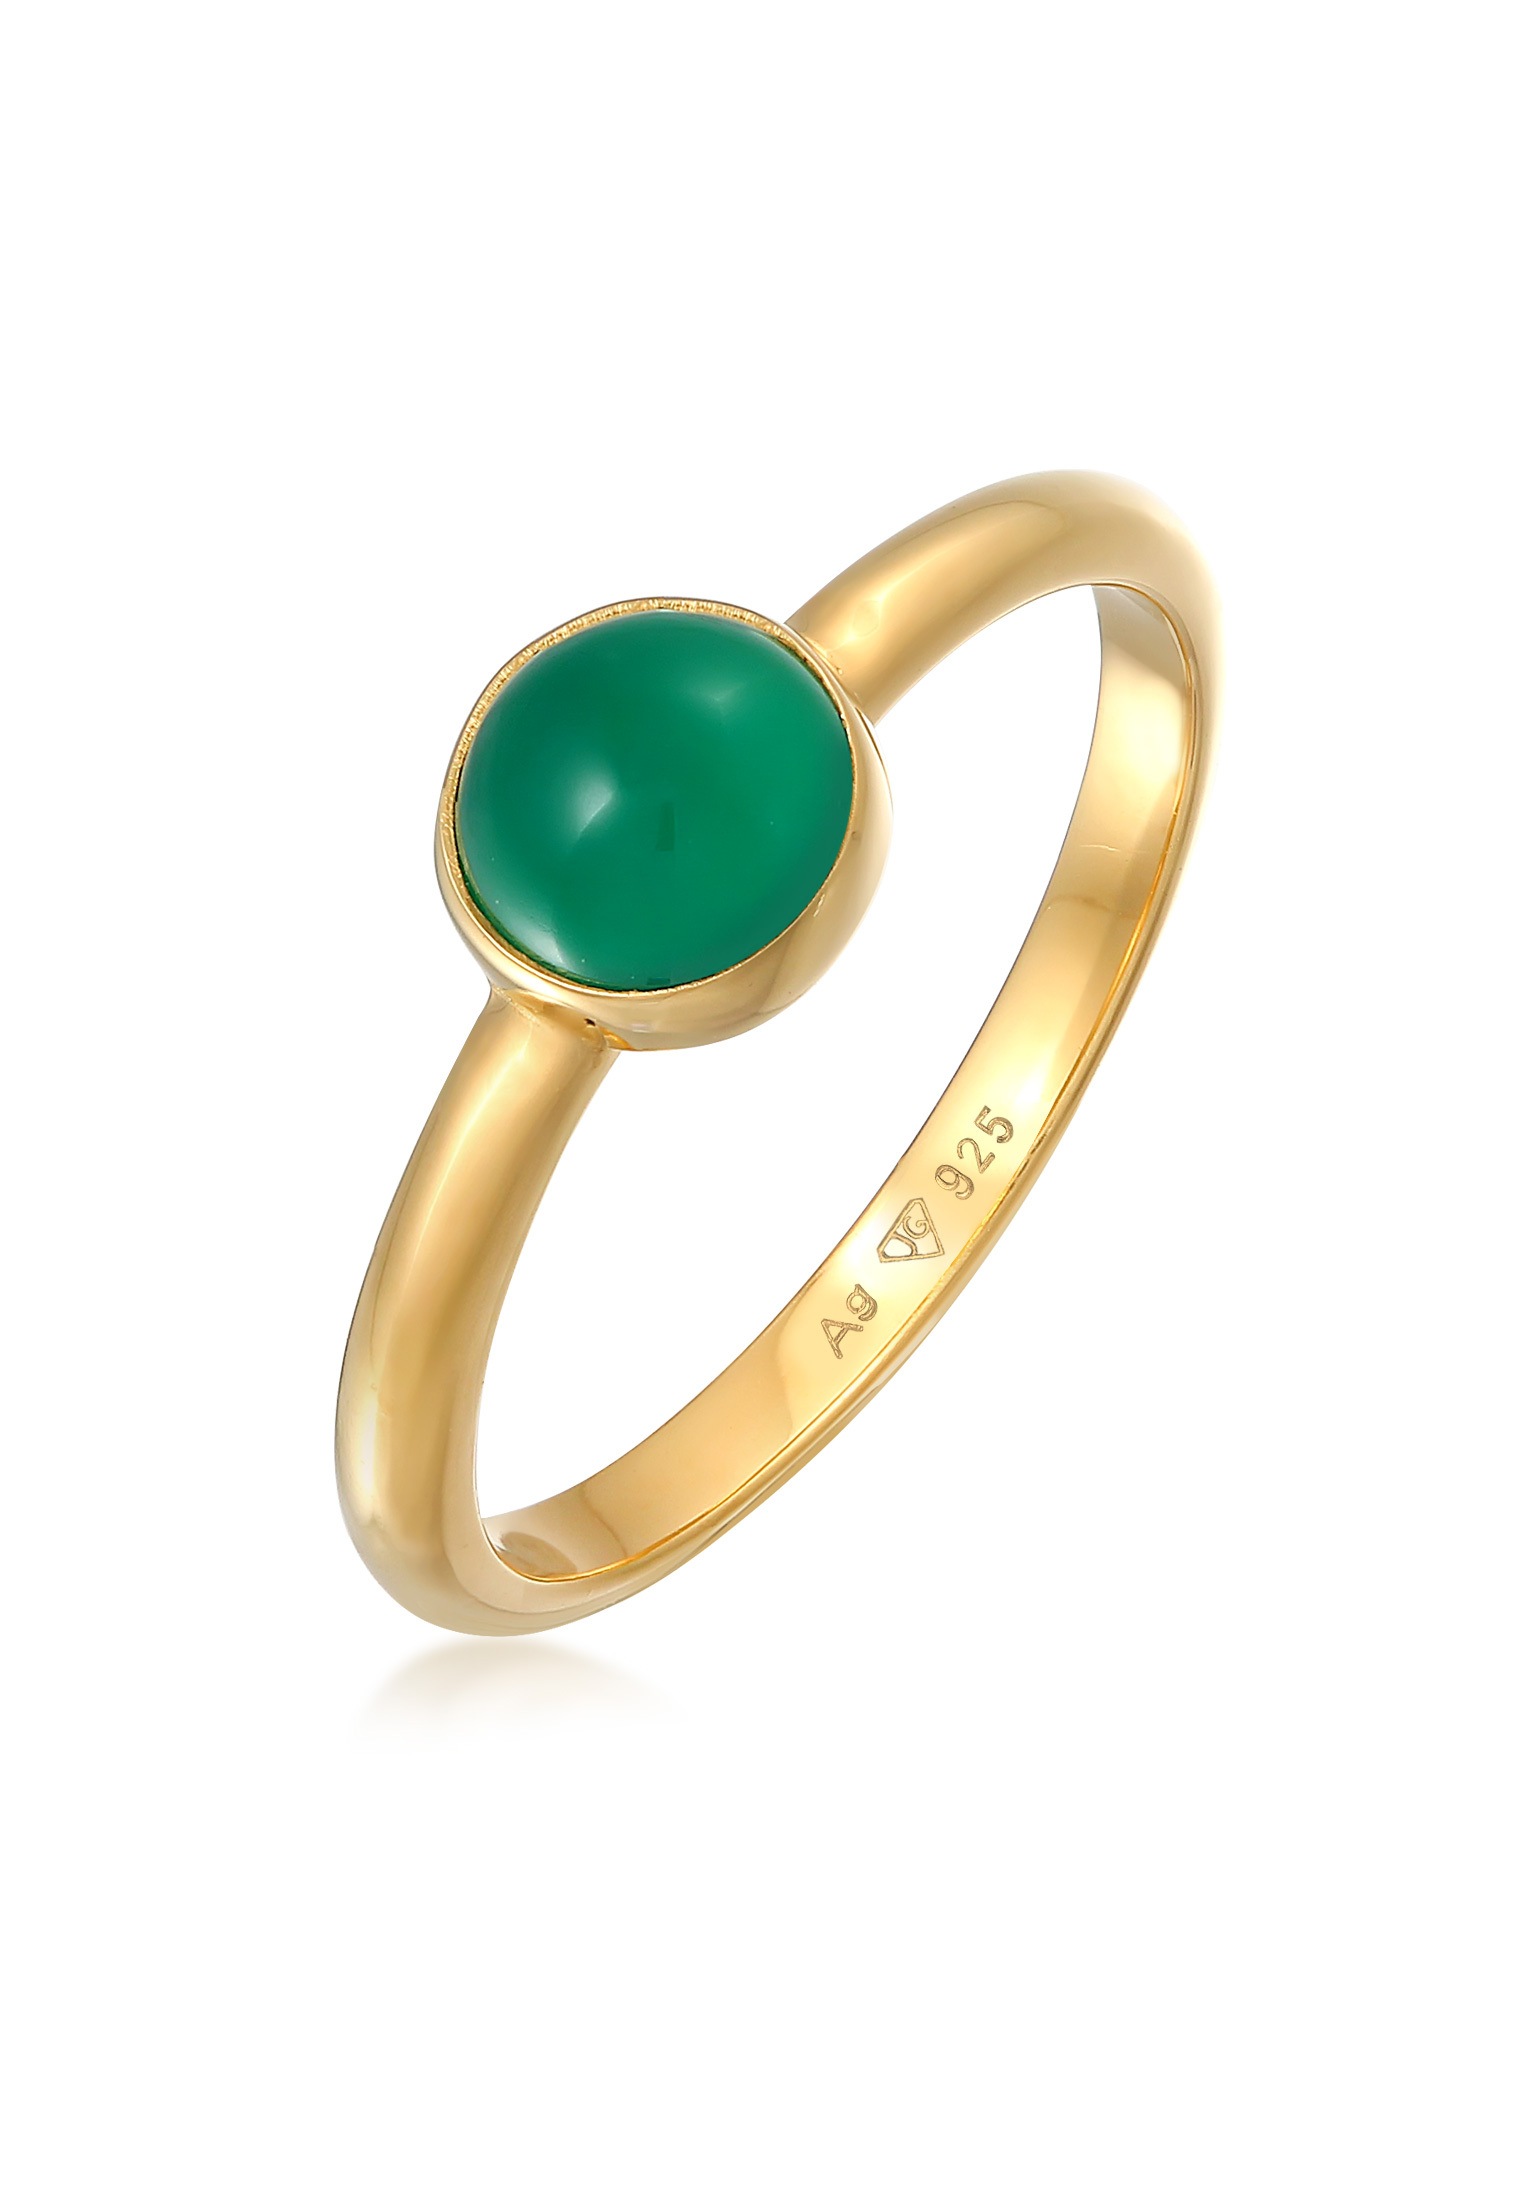 Fingerring „Achat Edelstein Solitär 925 Silber“ Gold + grün mit Steinen 52 mm – mit Steinen